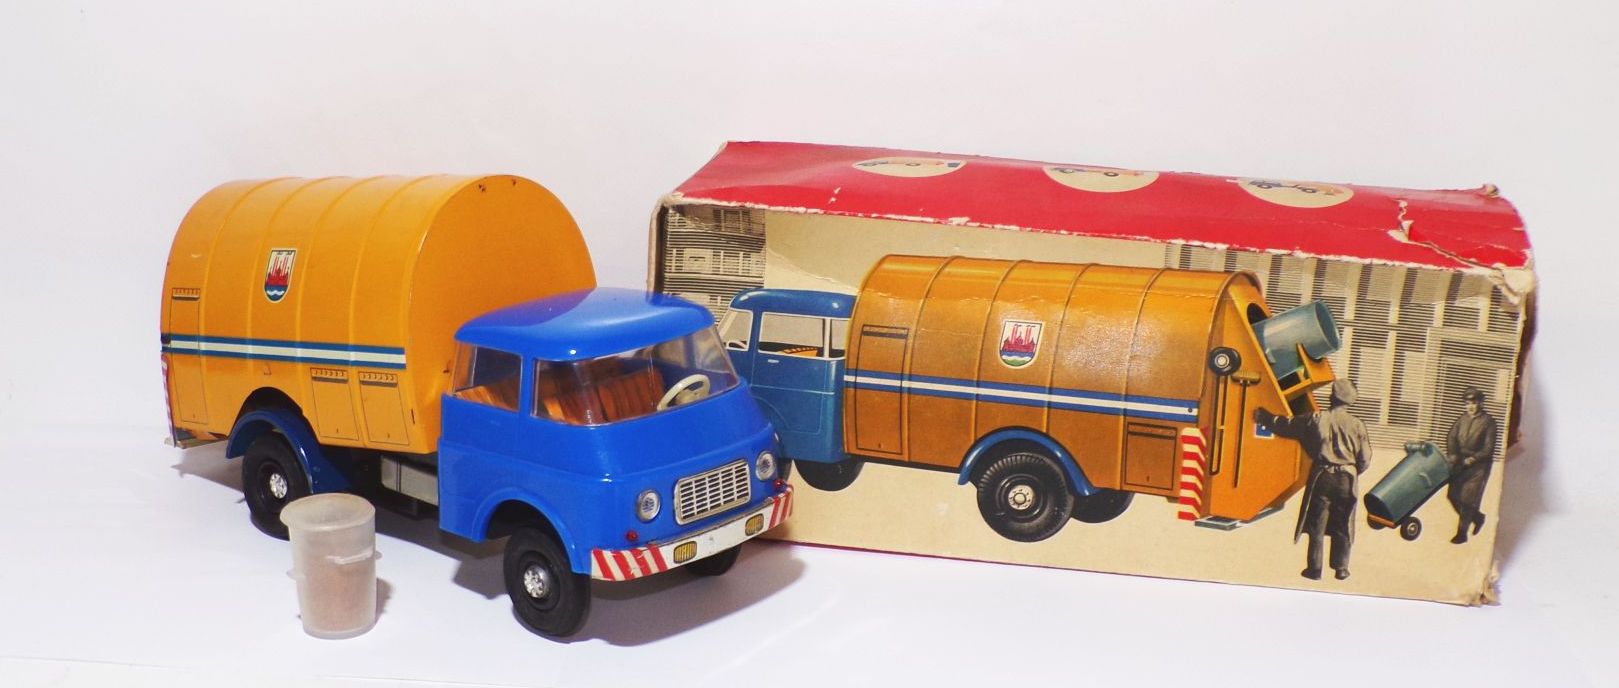 MSB Stadtreinigung Müllauto mit Originalkarton DDR Spielzeug